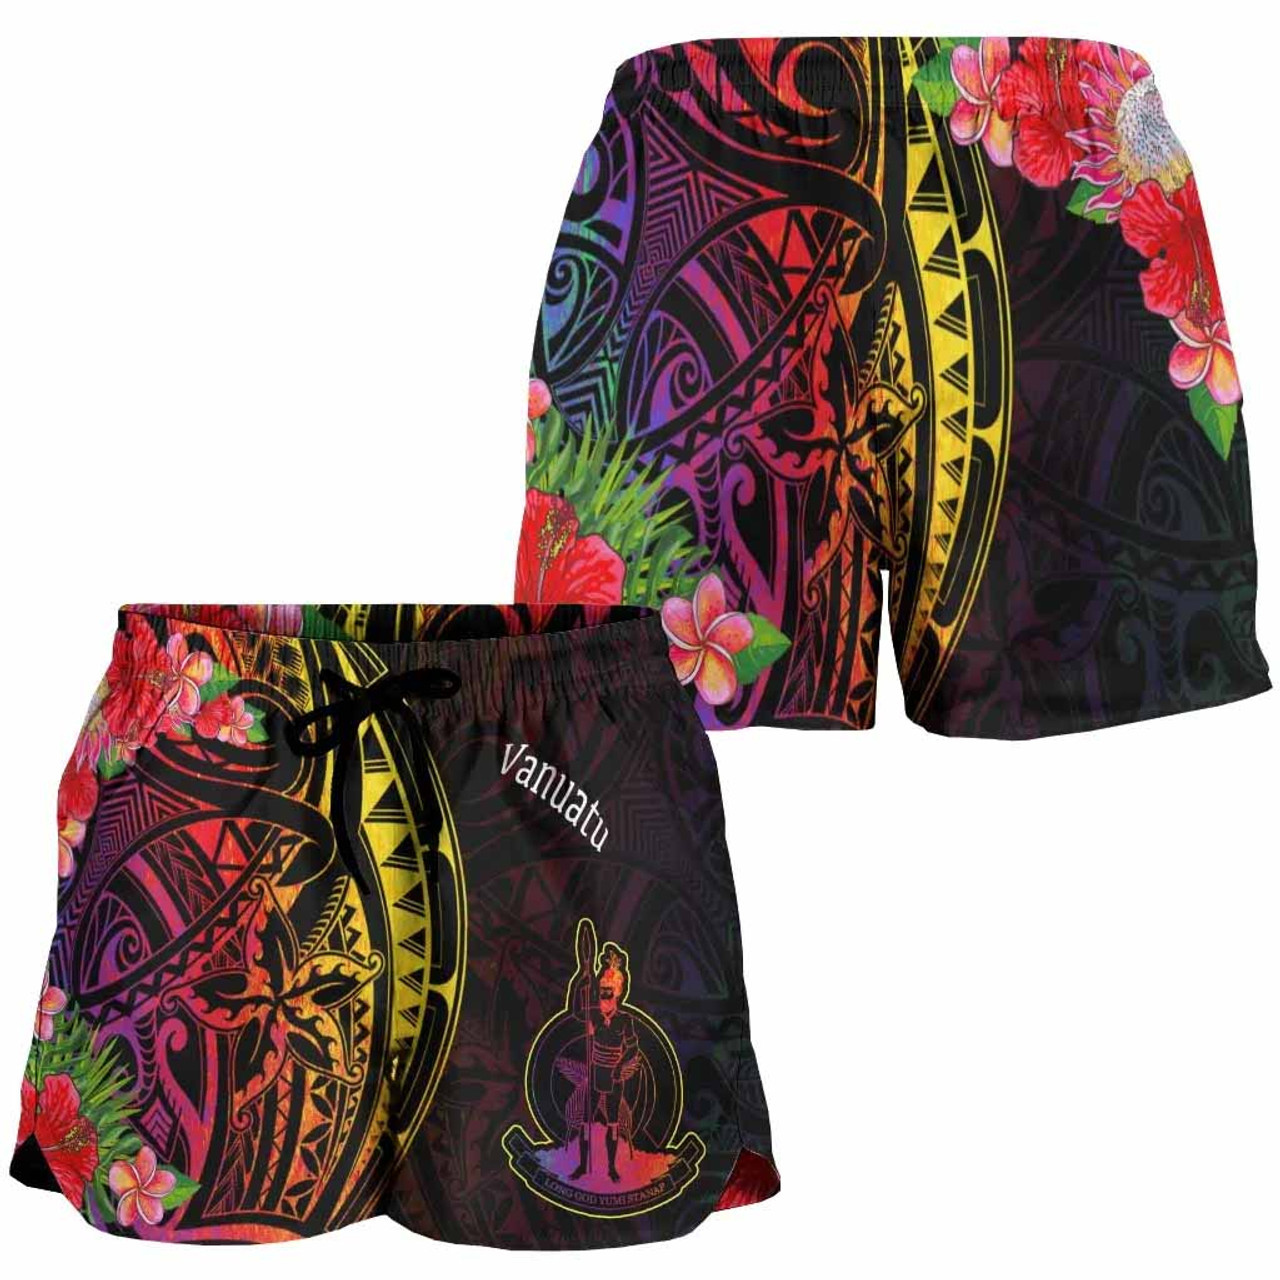 Vanuatu Women Shorts - Tropical Hippie Style 4